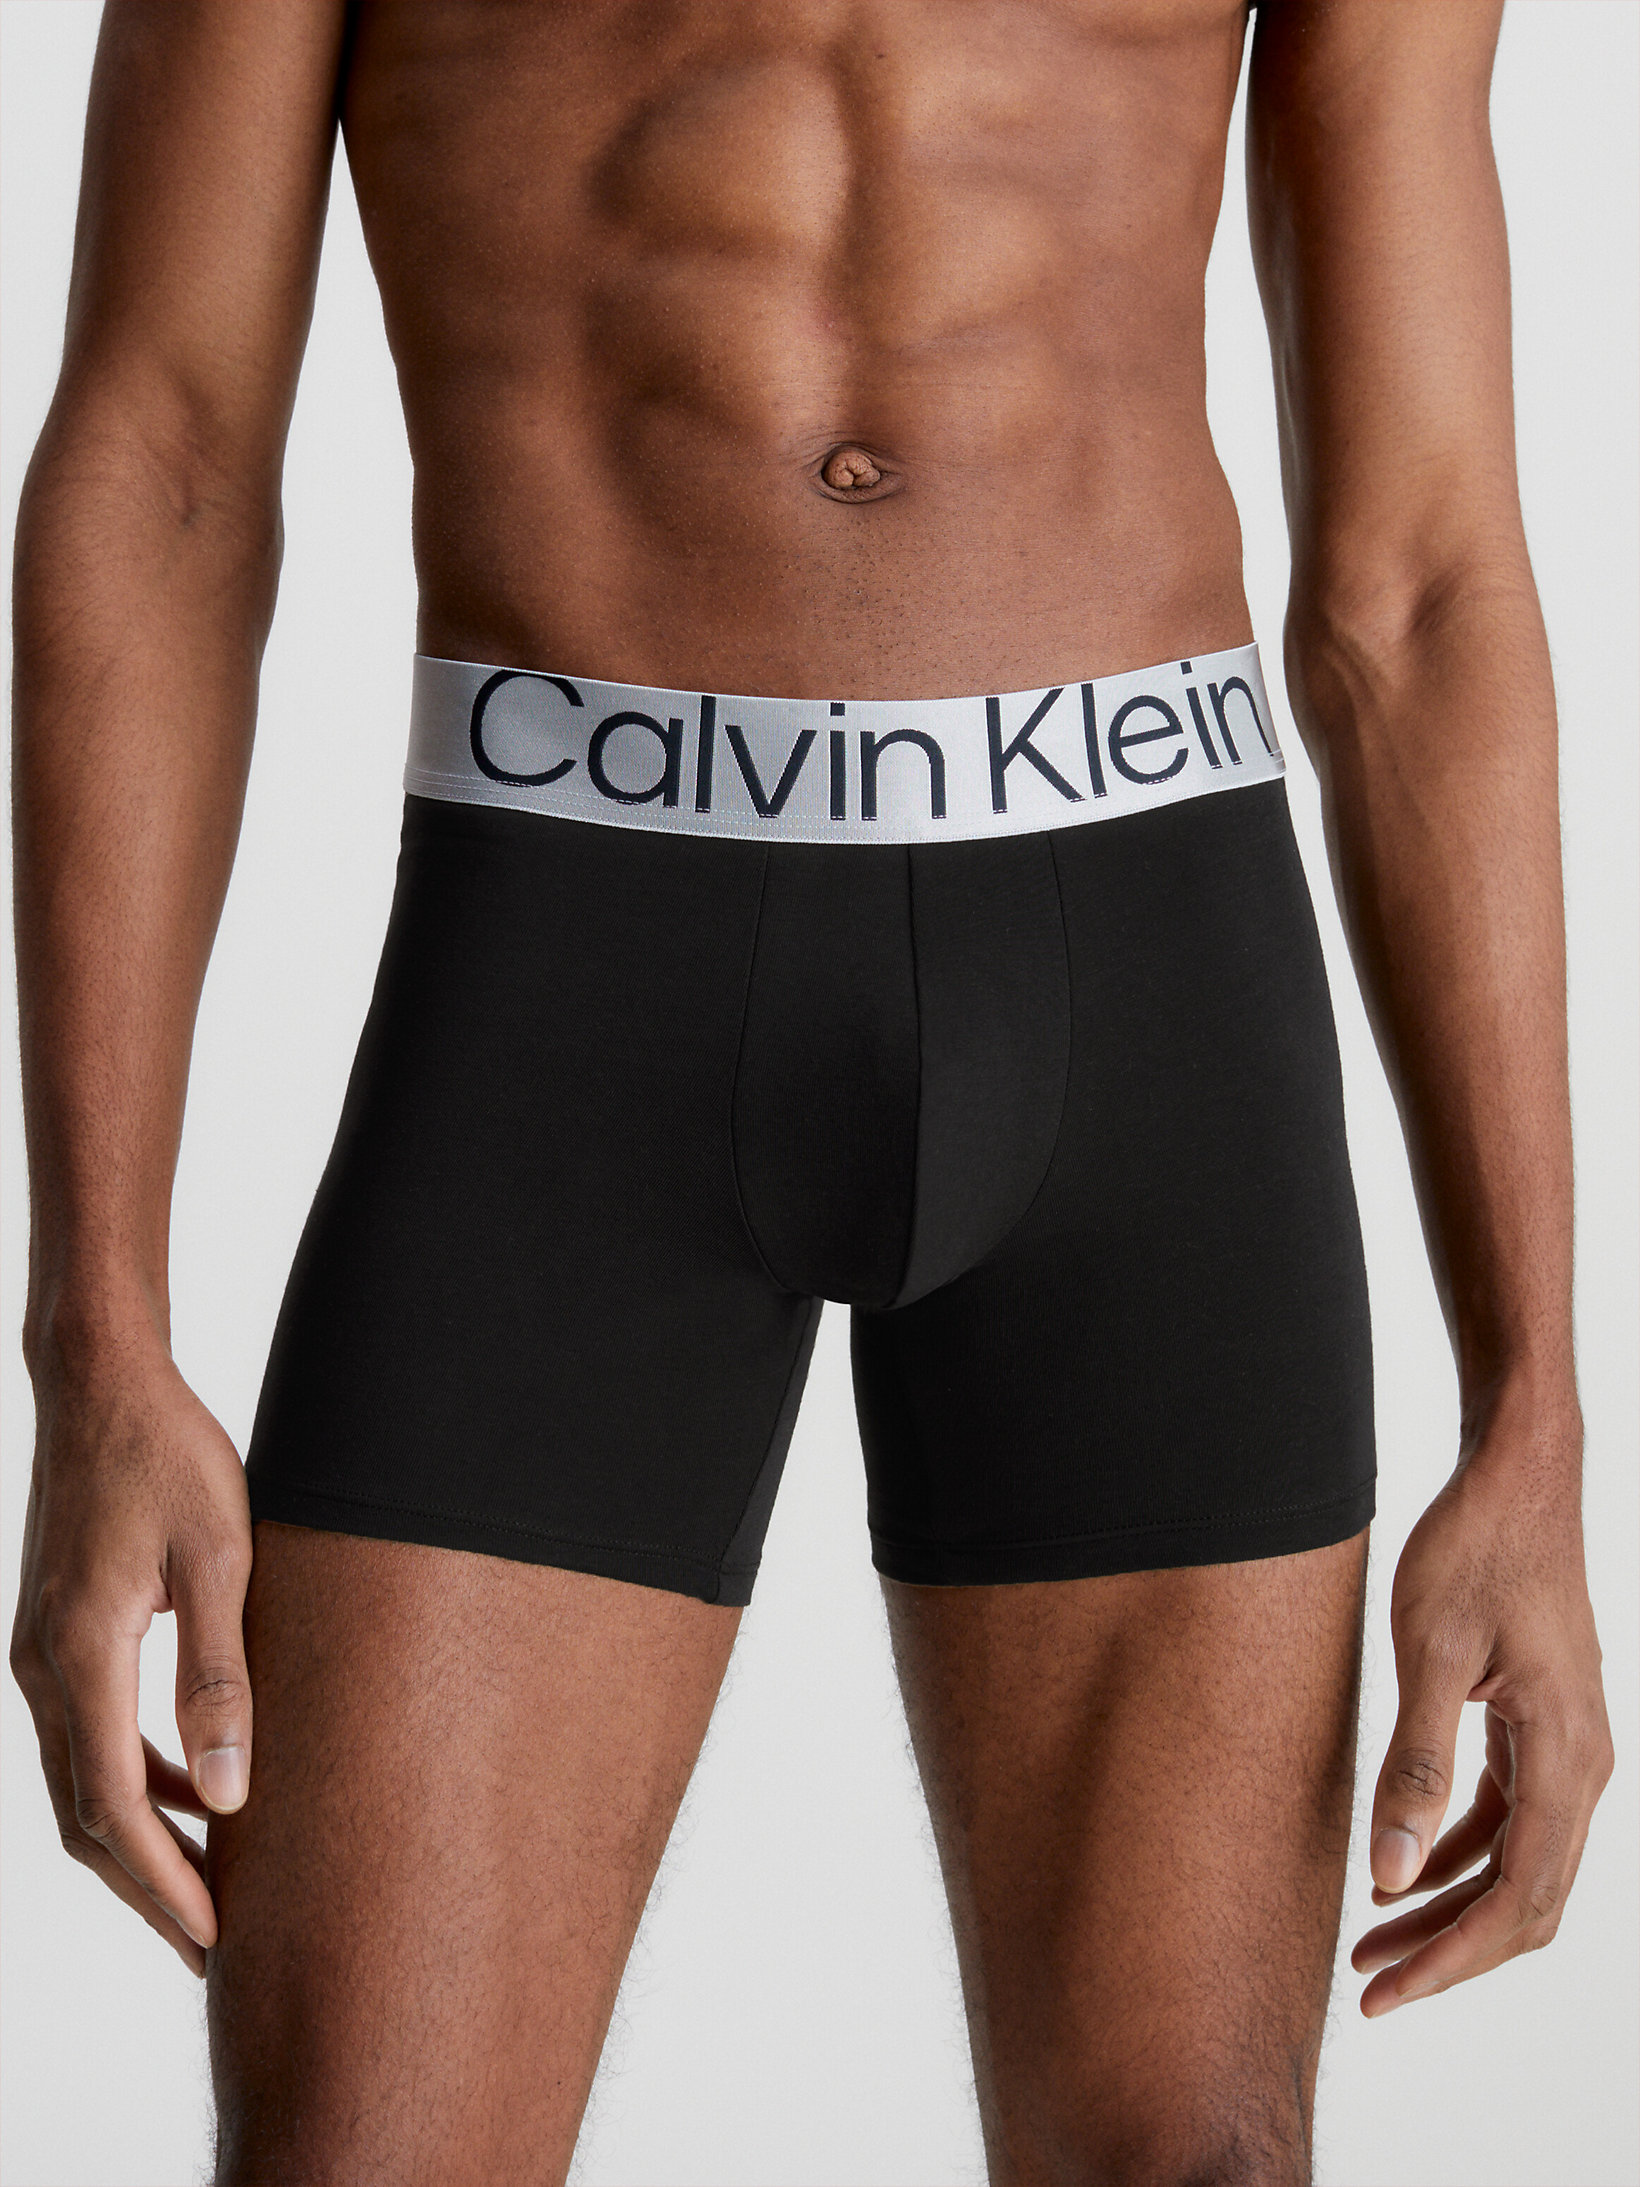 Mens Clothing Underwear Boxers briefs Calvin Klein 3 Pack Briefs Steel Cotton in Black for Men 